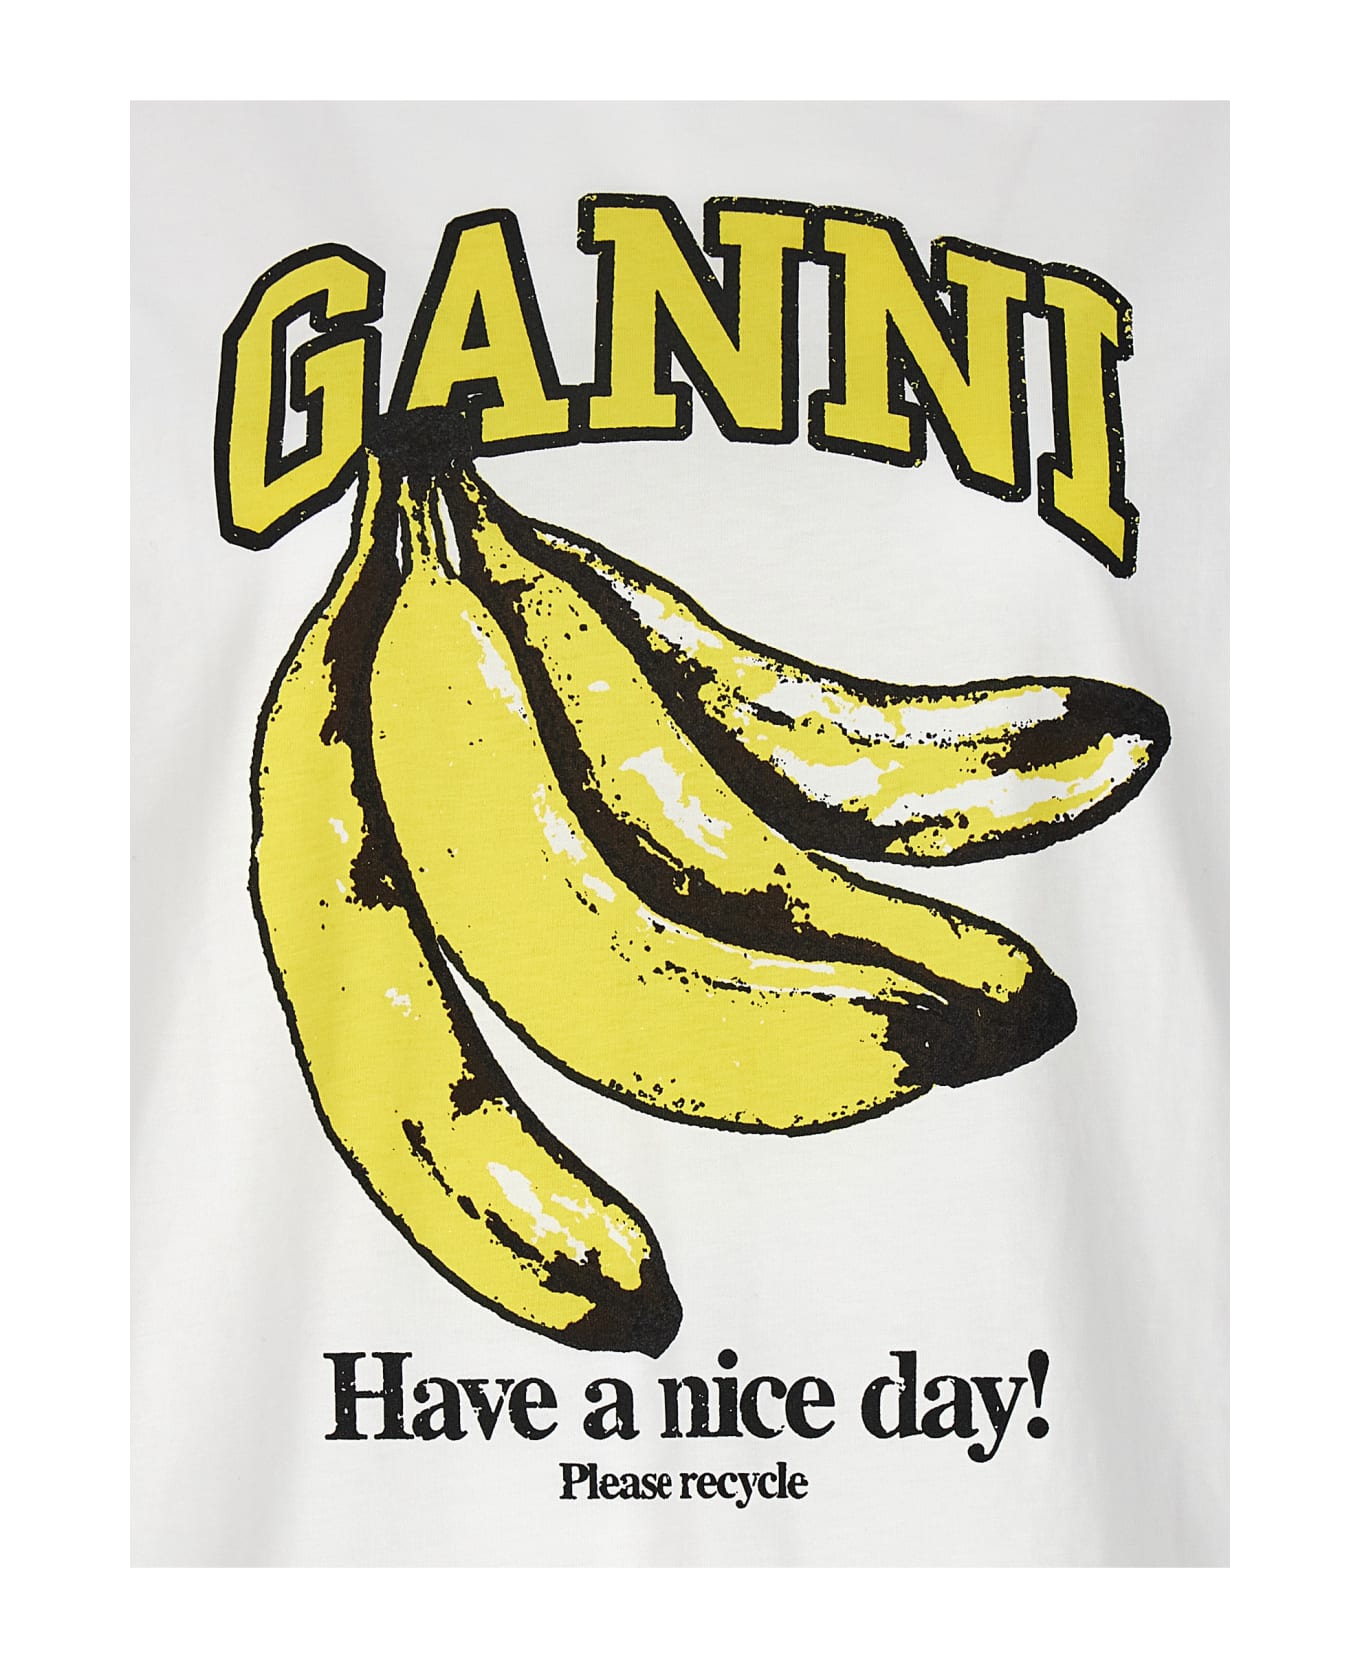 Ganni 'banana' T-shirt - Bright White Tシャツ